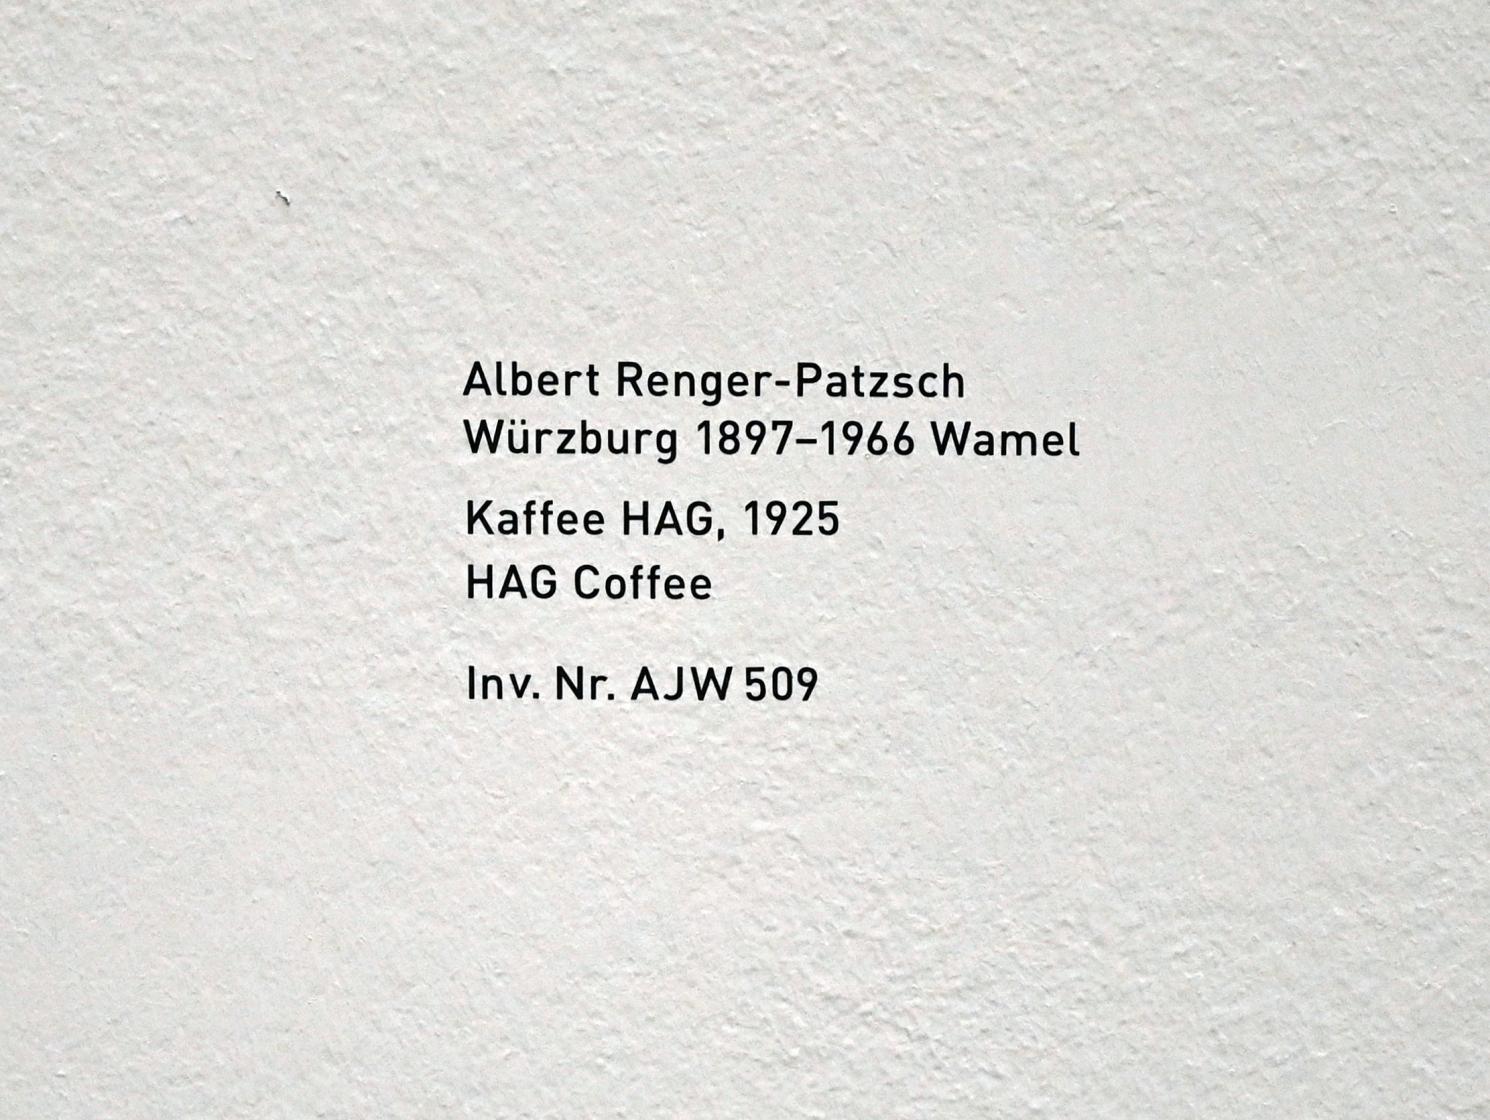 Albert Renger-Patzsch (1925–1959), Kaffee HAG, München, Pinakothek der Moderne, Saal 8, 1925, Bild 2/2